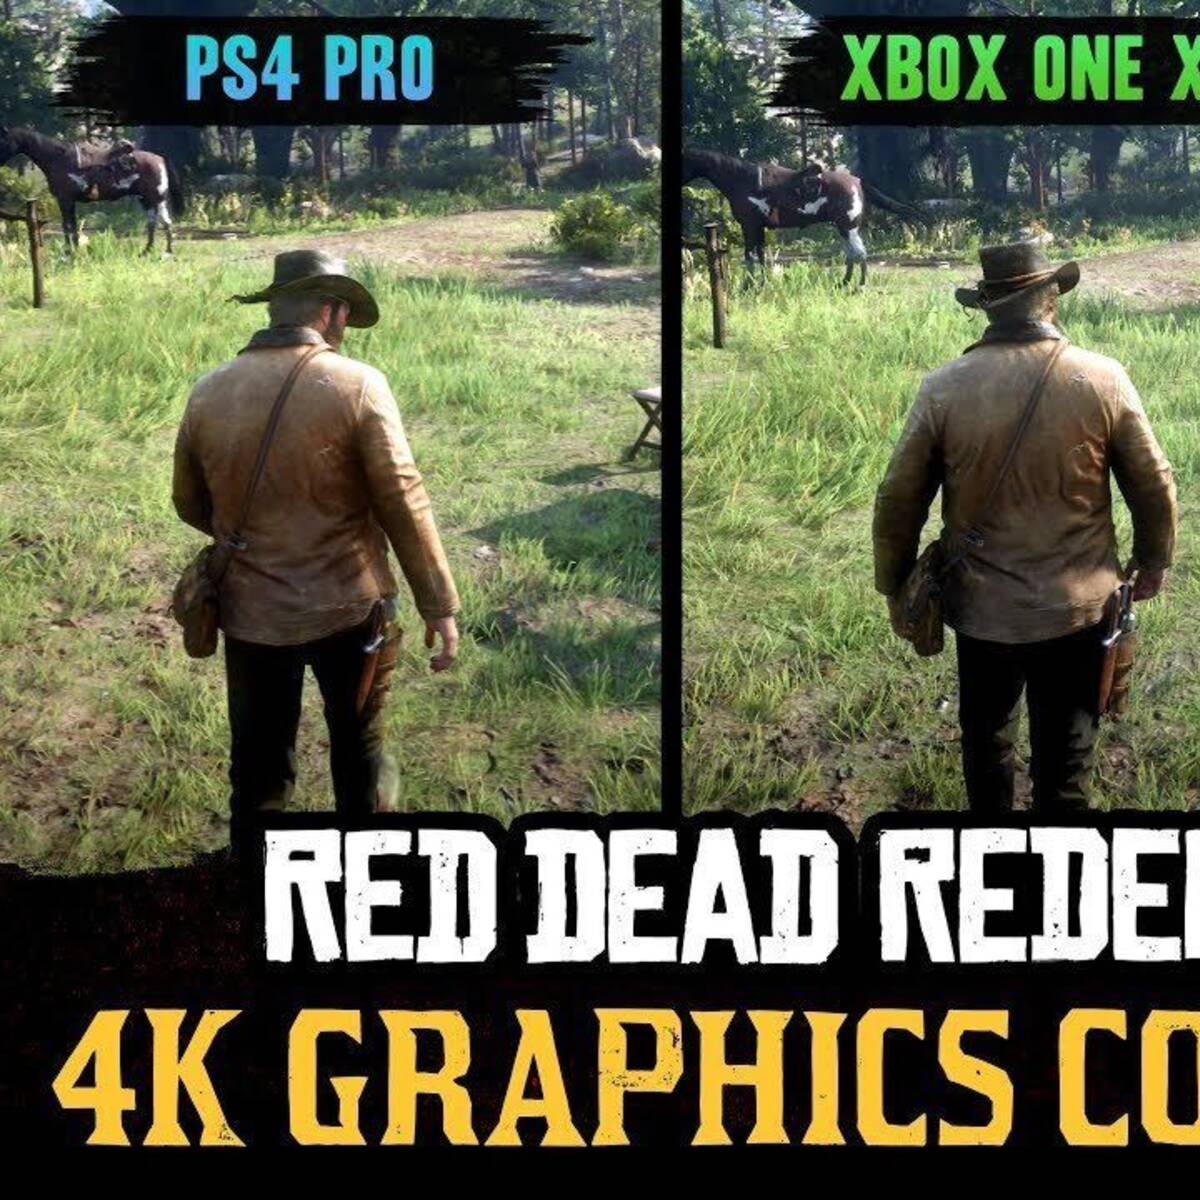 Red Dead Redemption 2: PC vs Consolas - Vê as diferenças